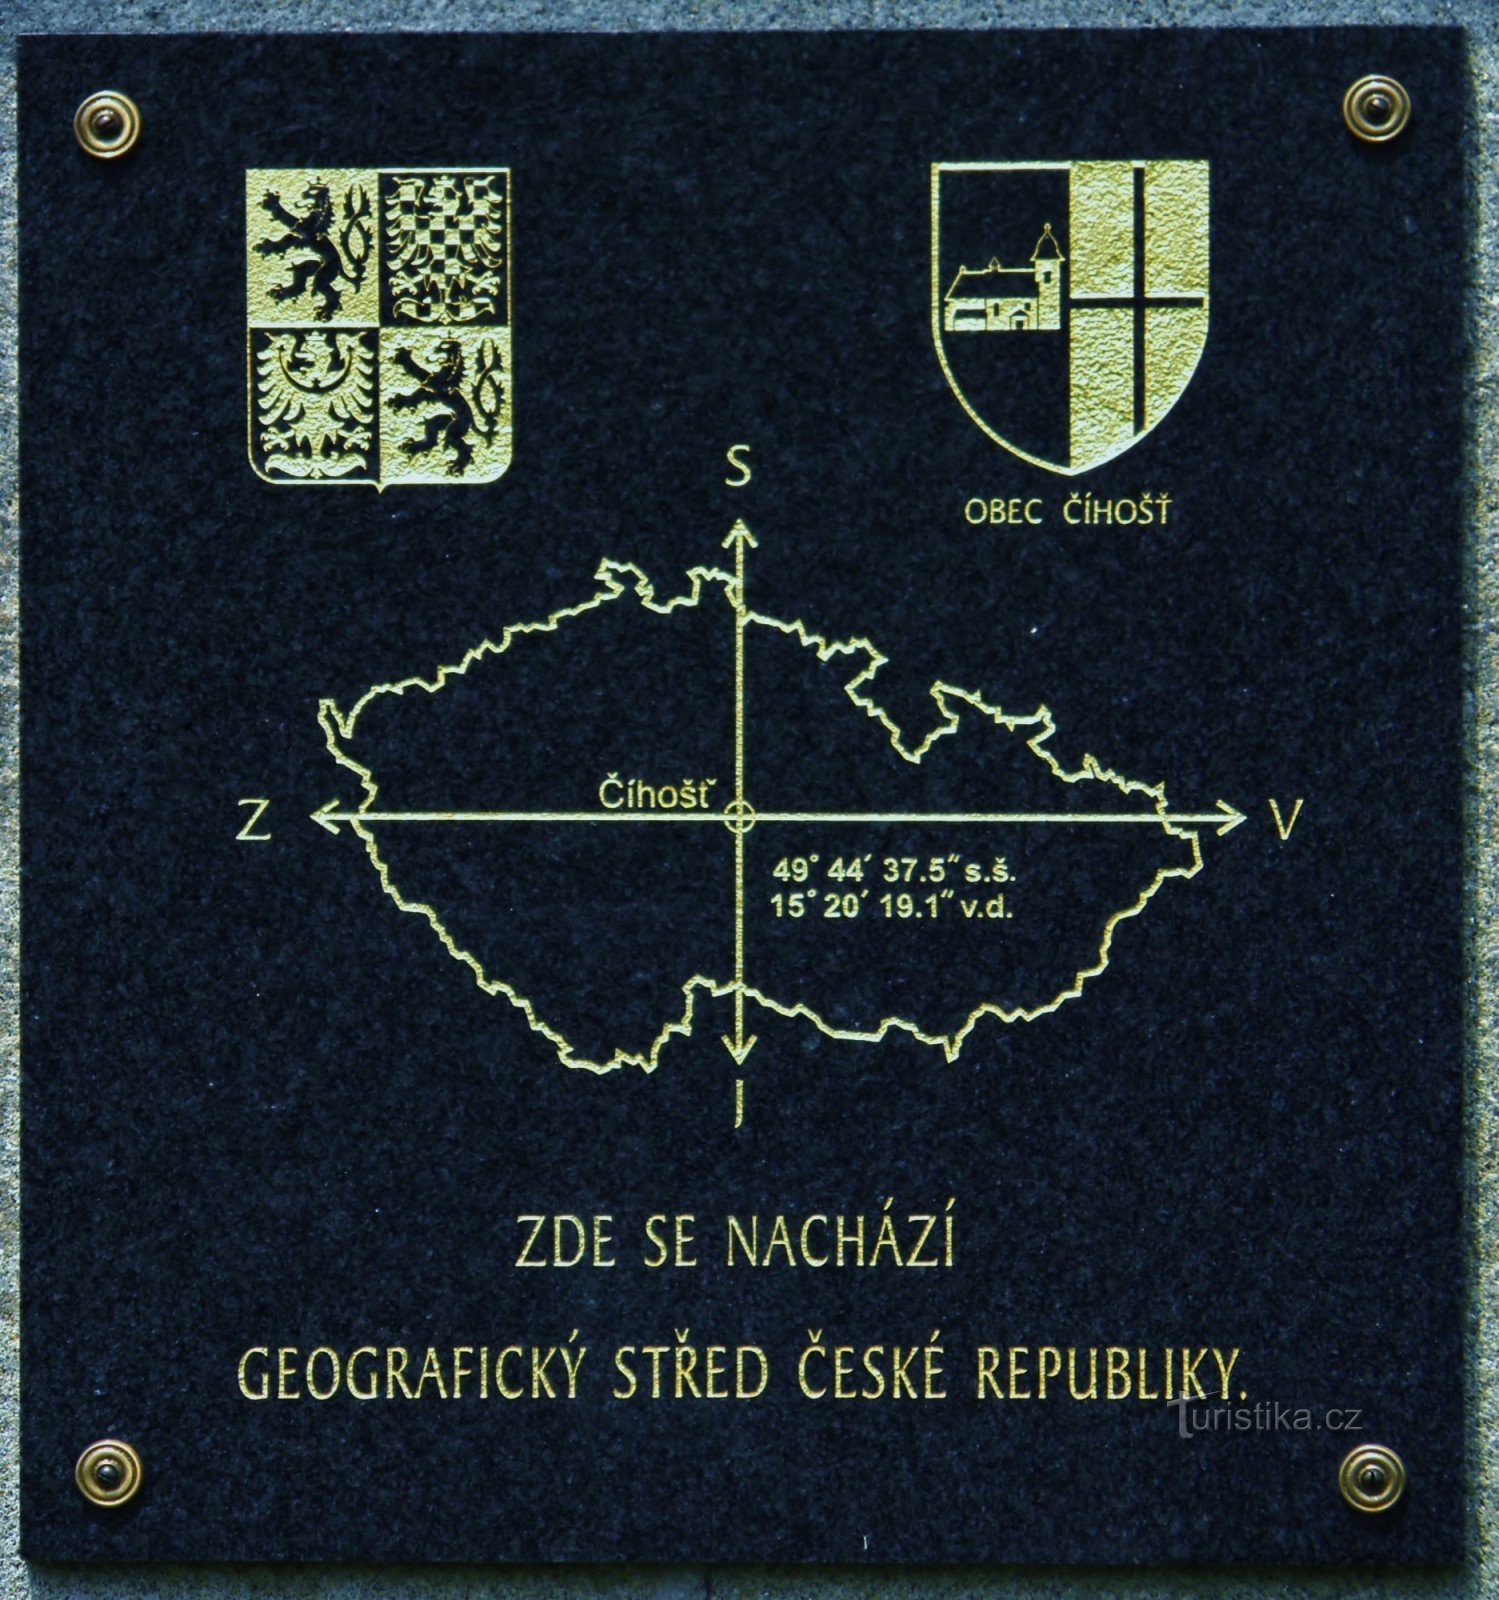 チェコ共和国の地理的中心部にある石碑の案内板。